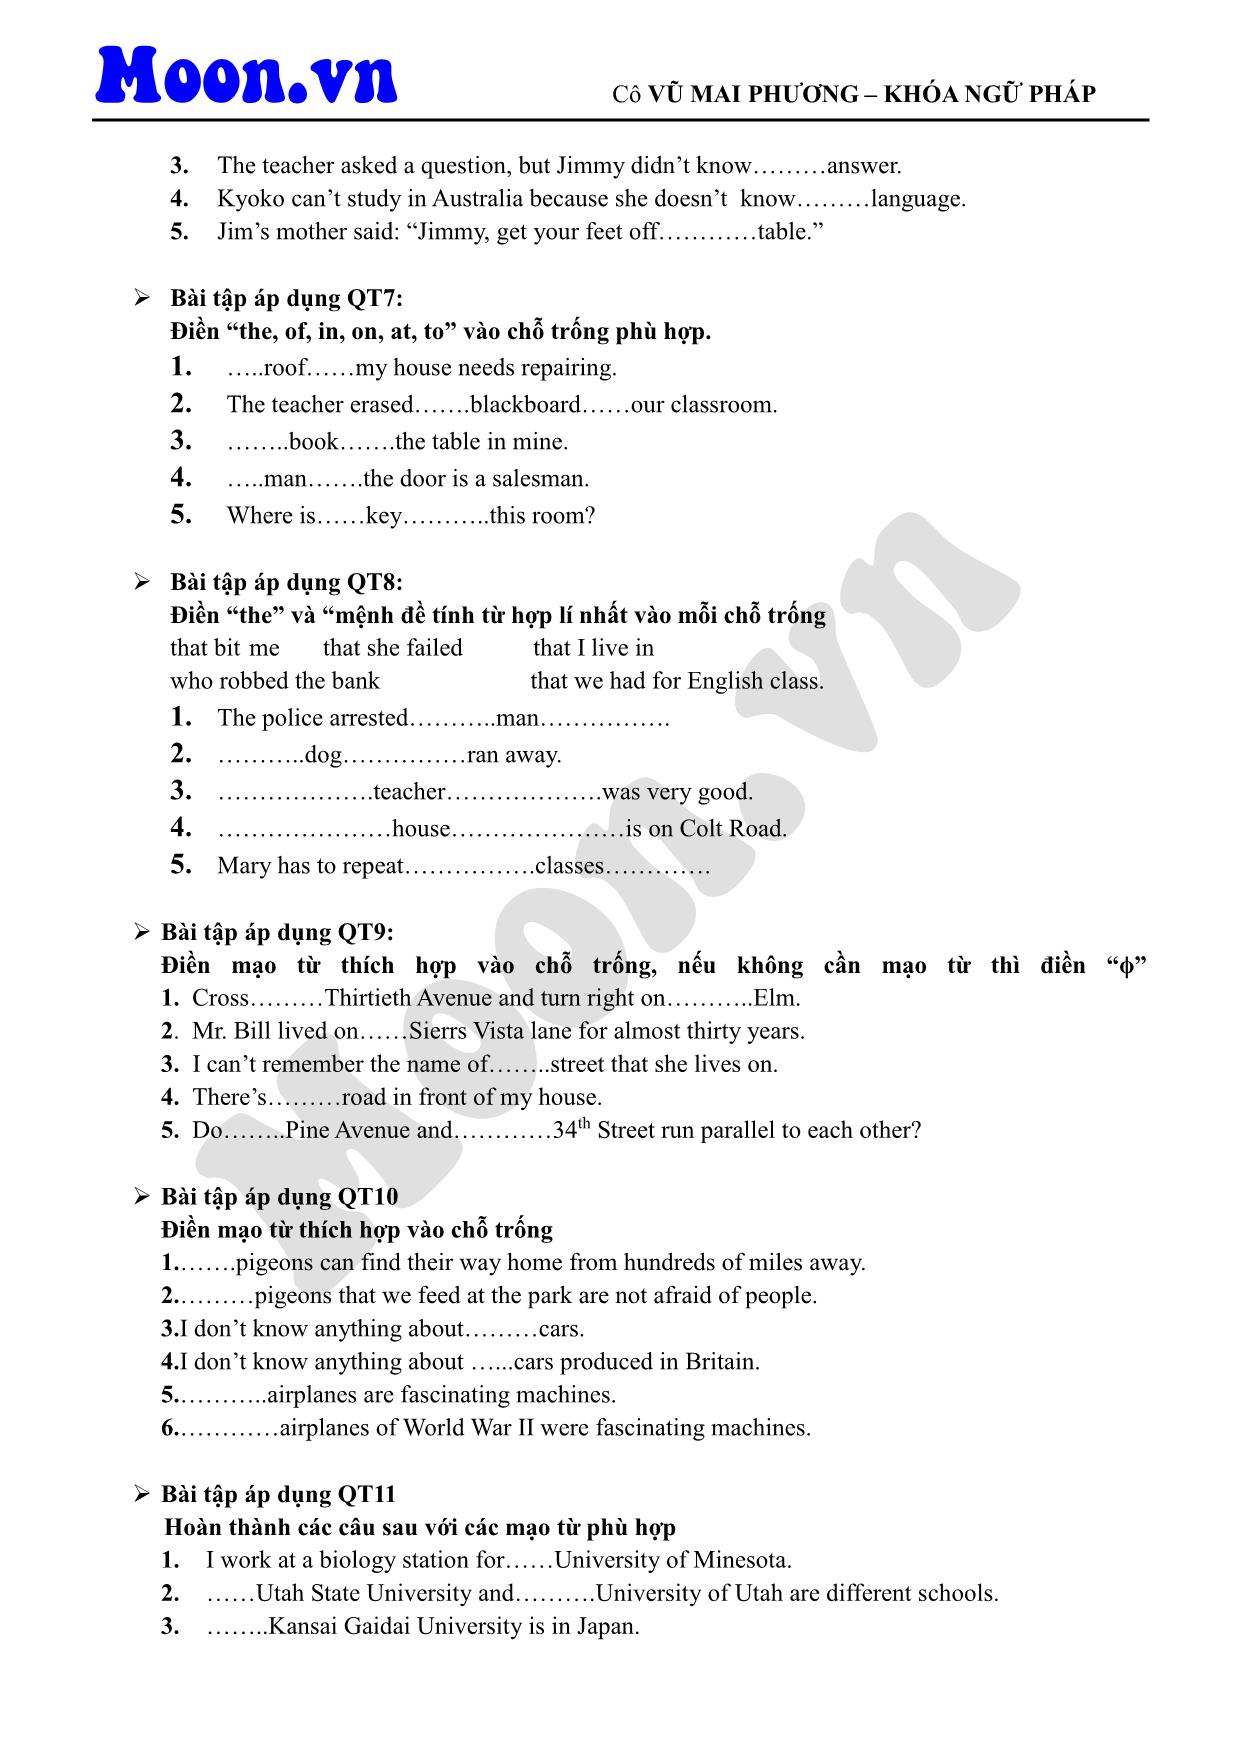 Giáo trình Tiếng Anh - Mạo từ (Phần 2) trang 2